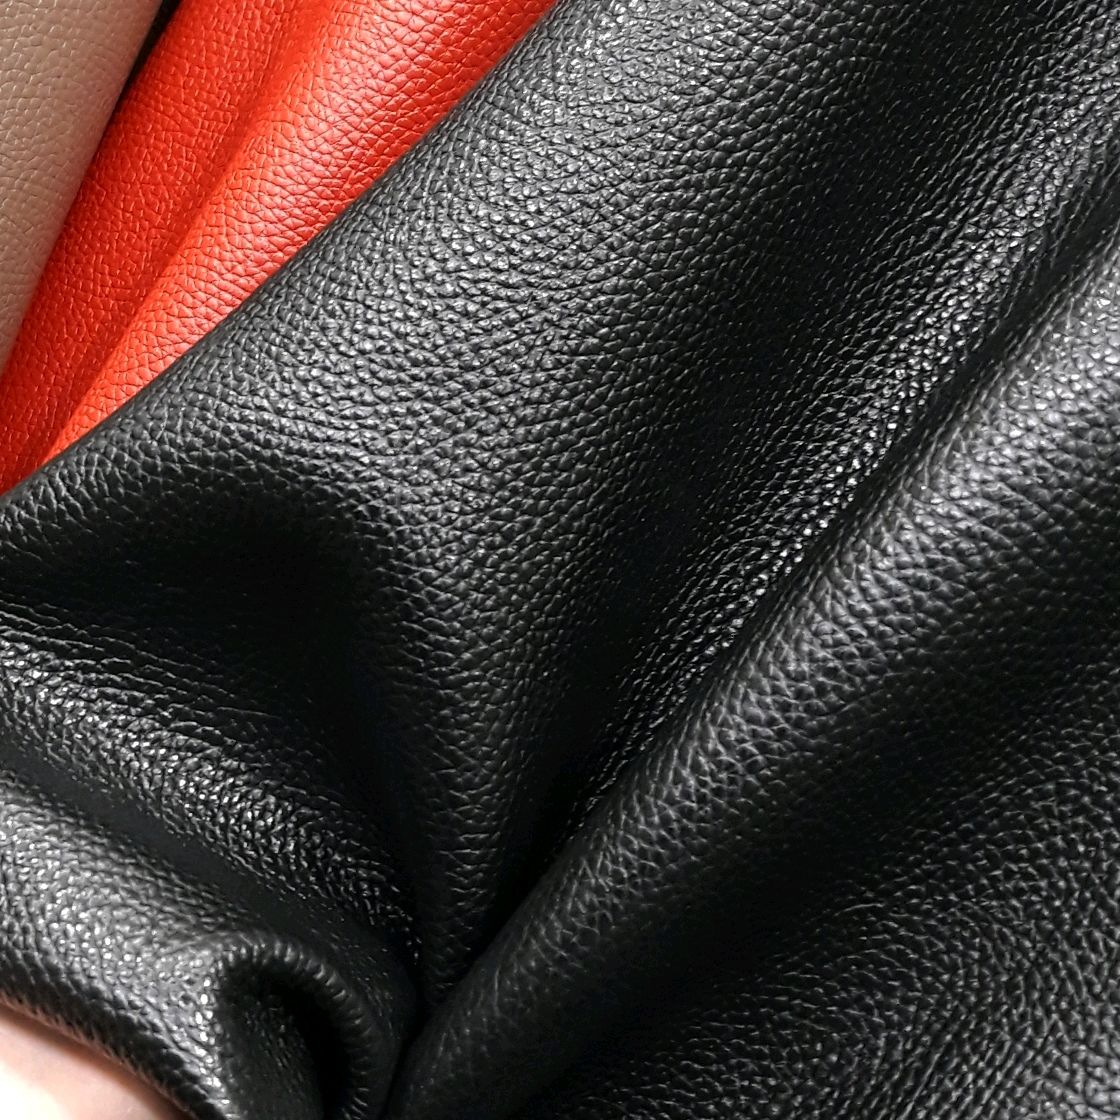 Leather Polo effetigest 827 натуральная кожа